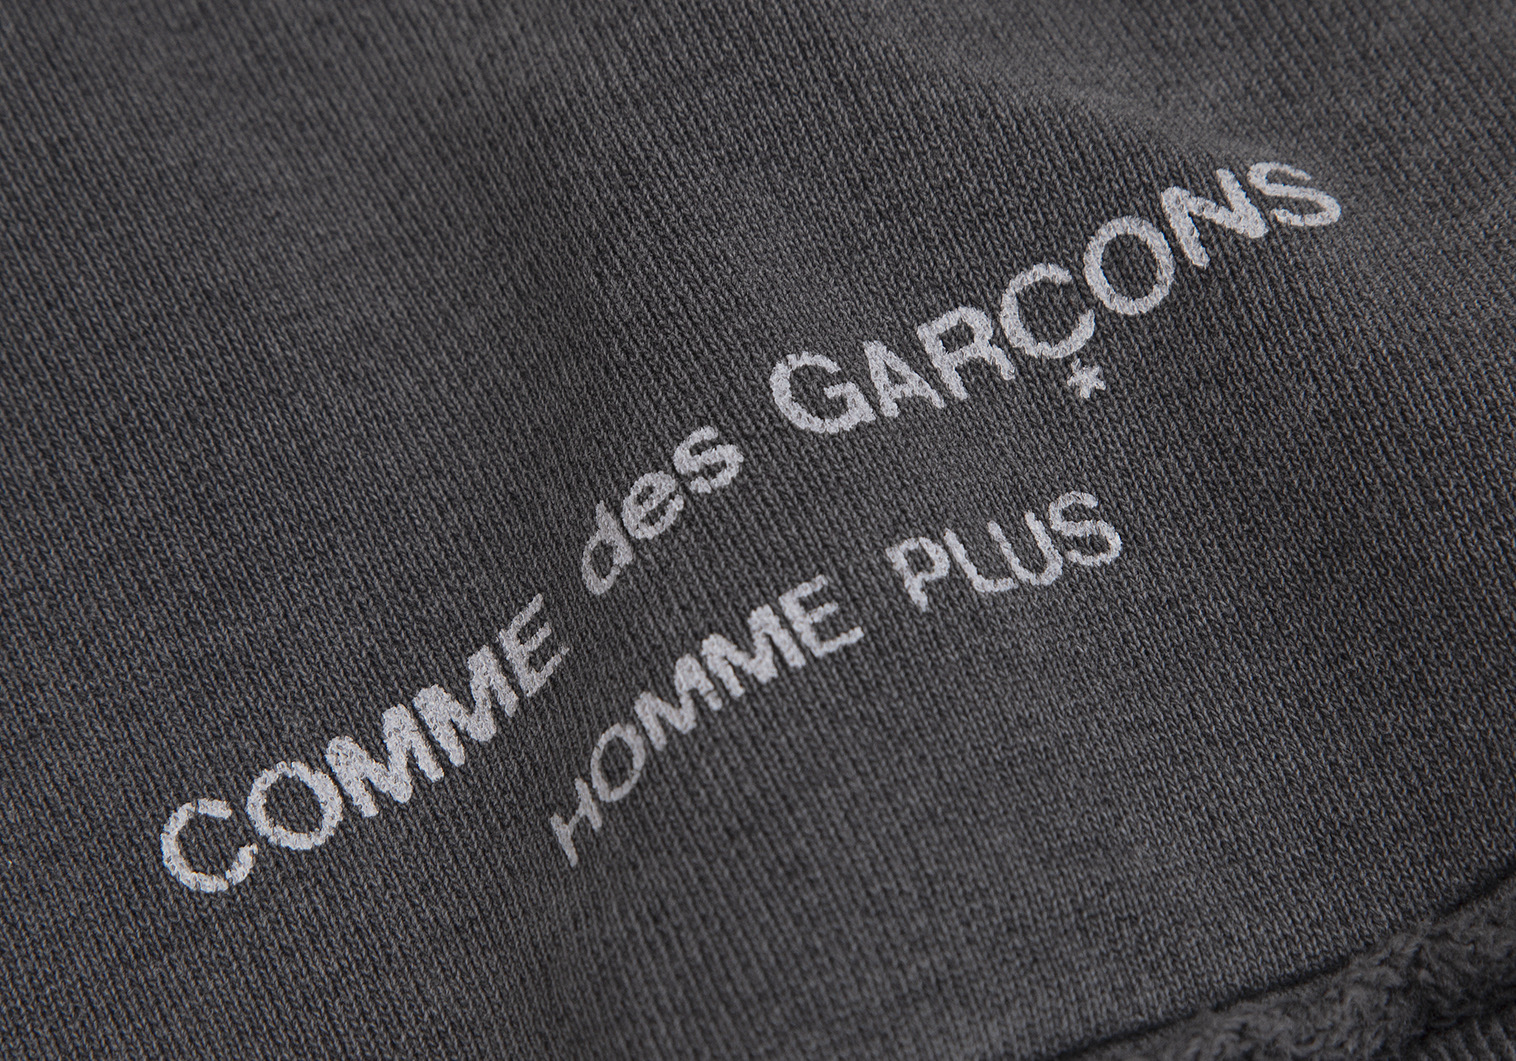 コムデギャルソン オムプリュスCOMME des GARCONS HOMME PLUS ...